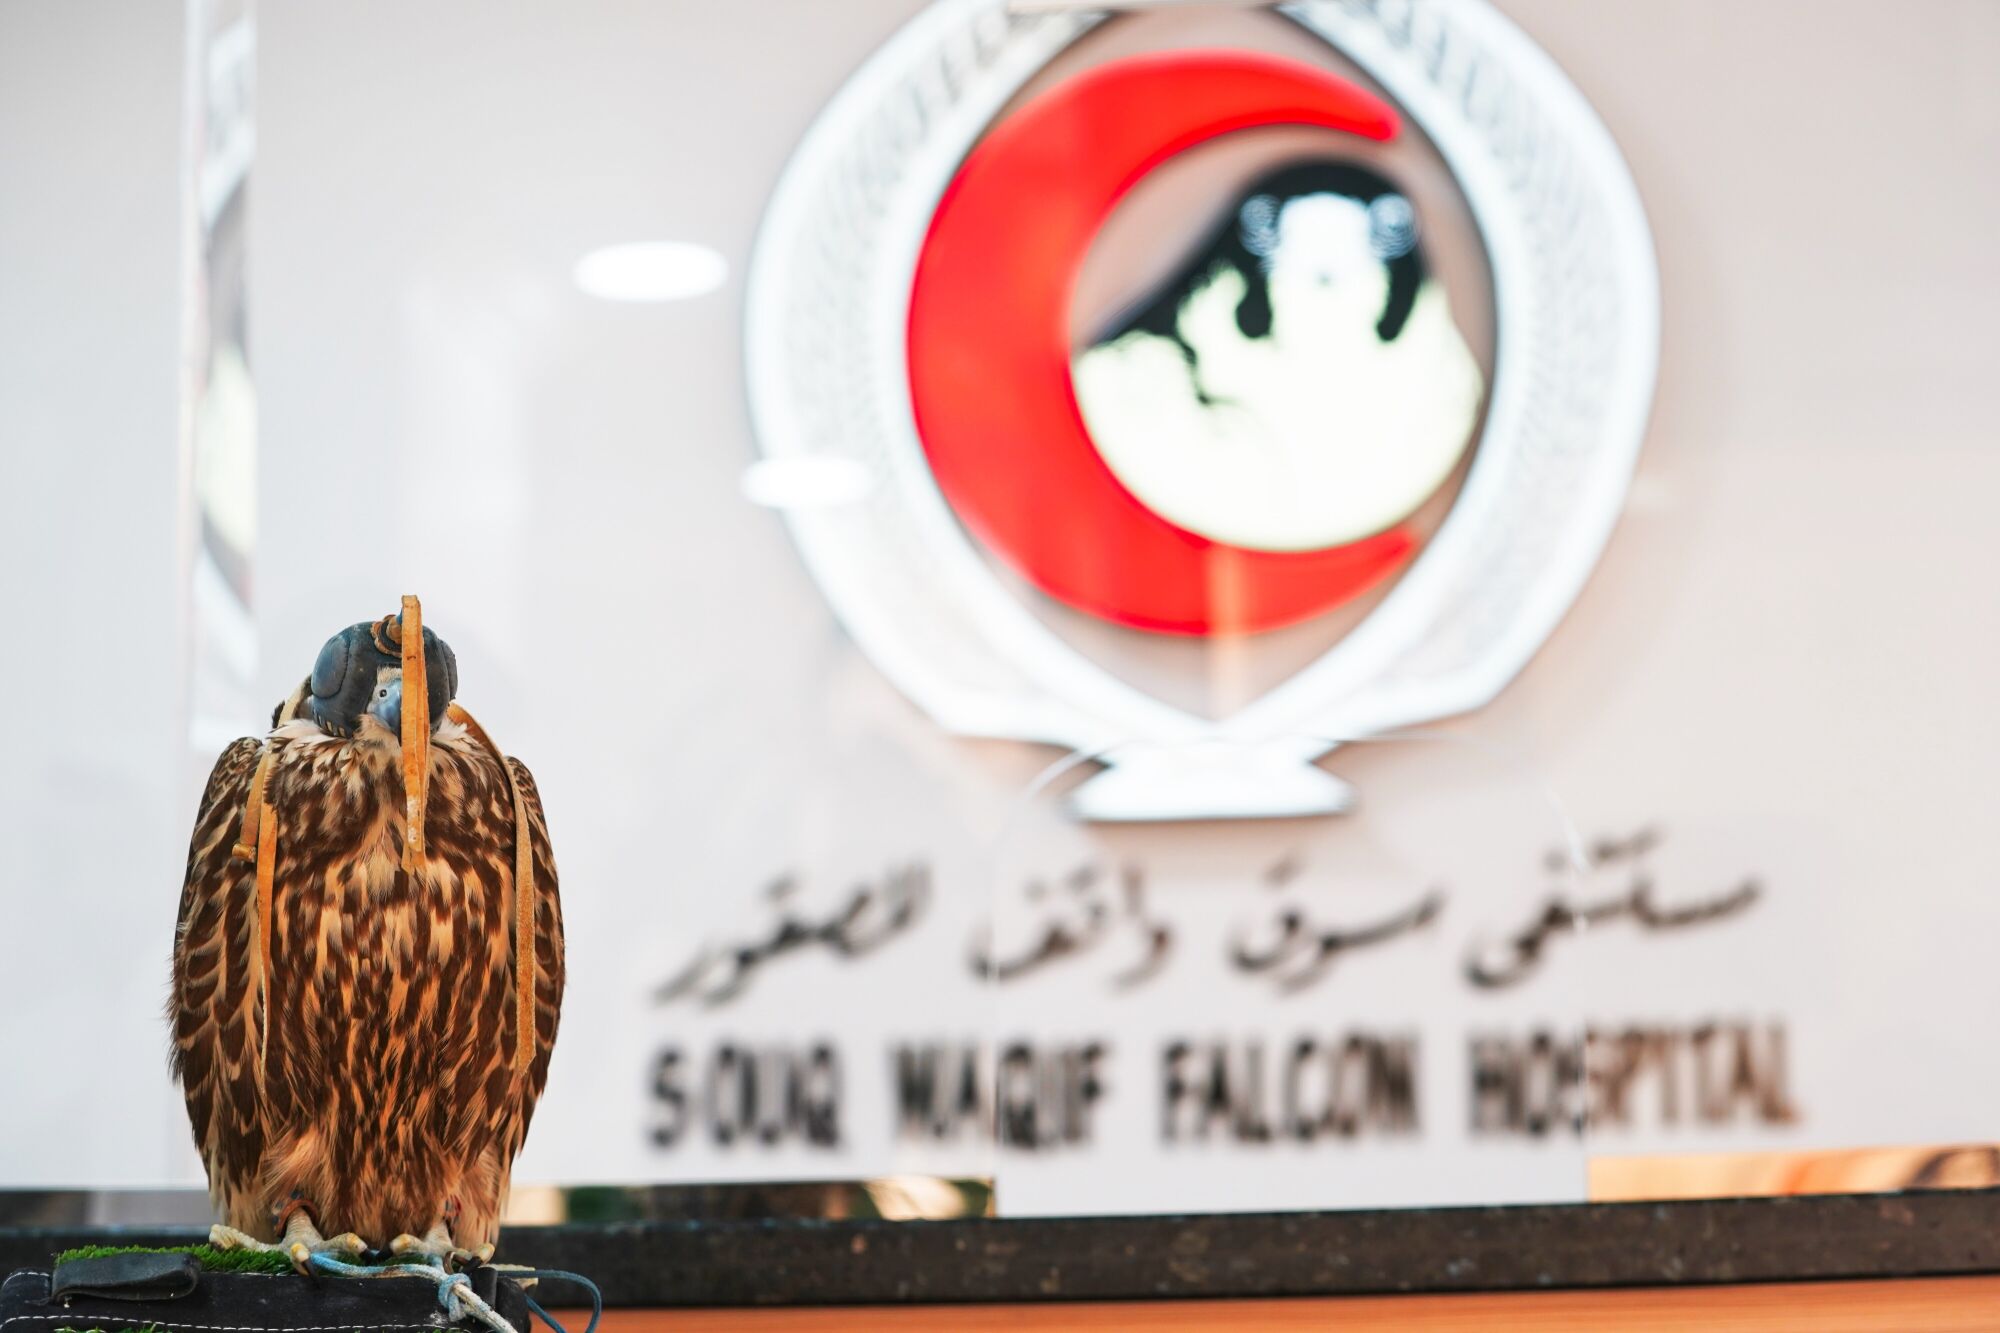 Bir alaca şahin, Souq Waqif Falcon Hastanesinde bir prosedür bekliyor.